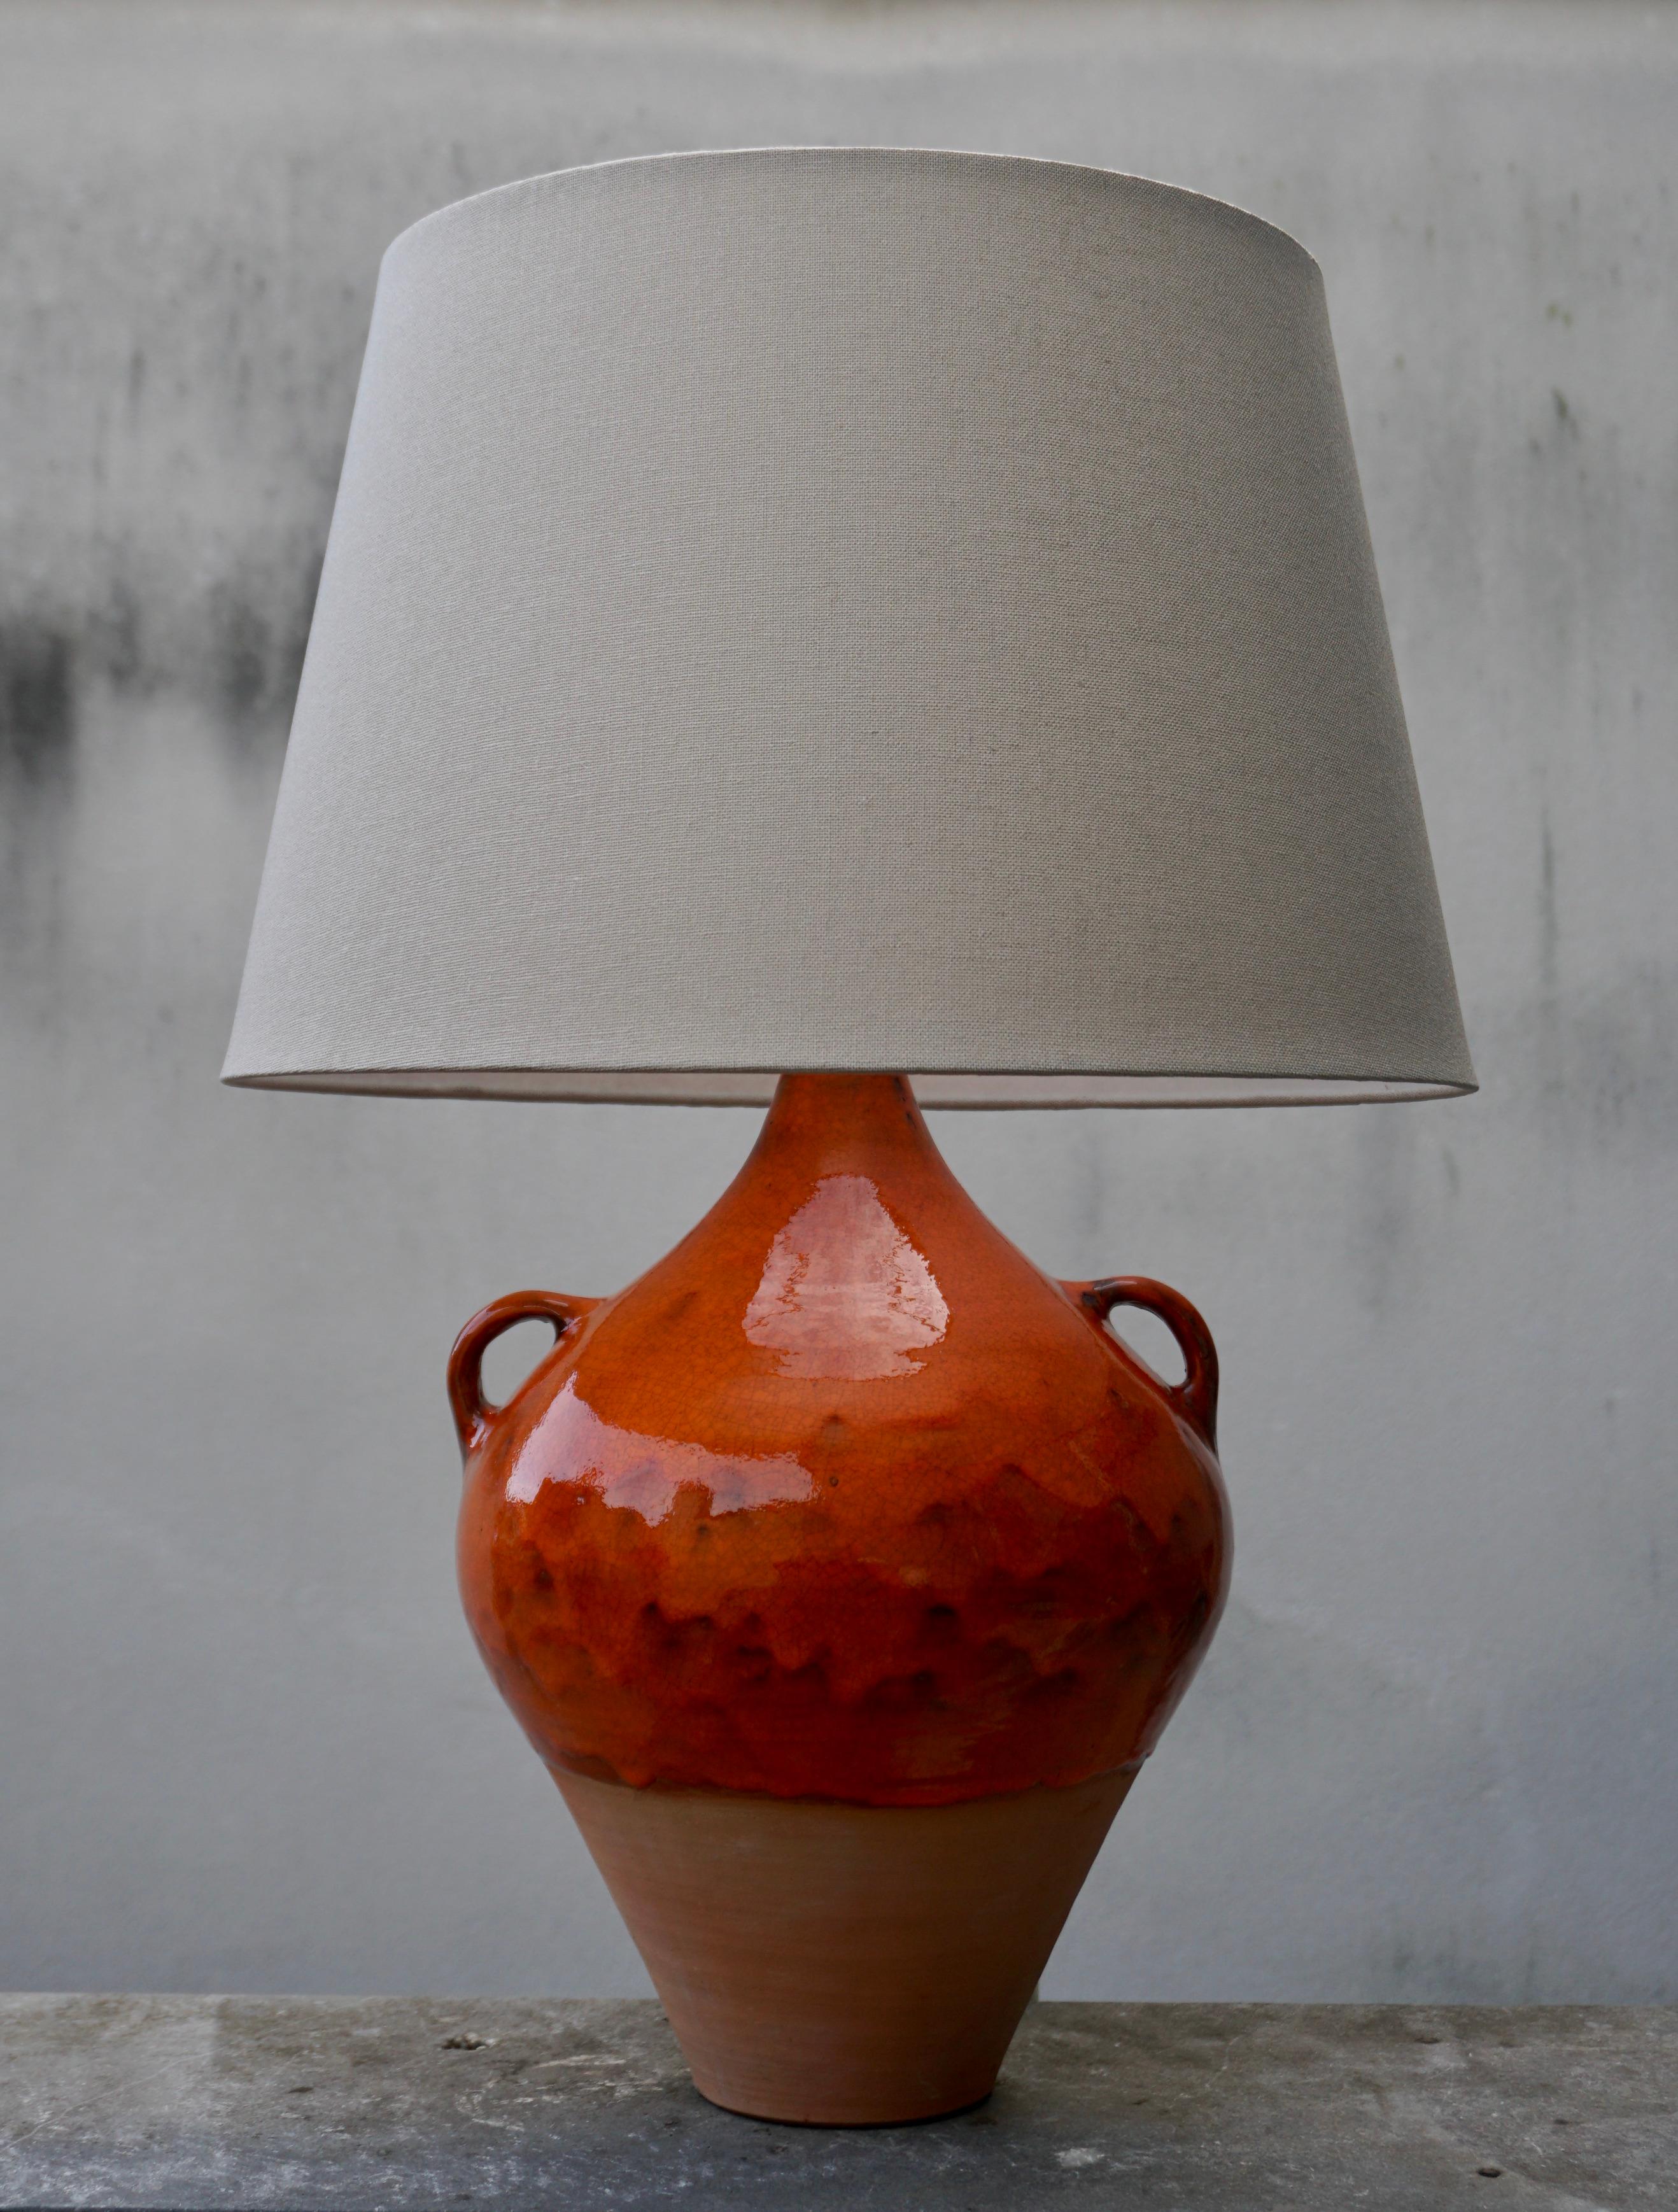 Lampe de table en céramique orange faite à la main.

Les dimensions de la lampe sans abat-jour sont 44 cm (hauteur) et  26 cm (diamètre)  